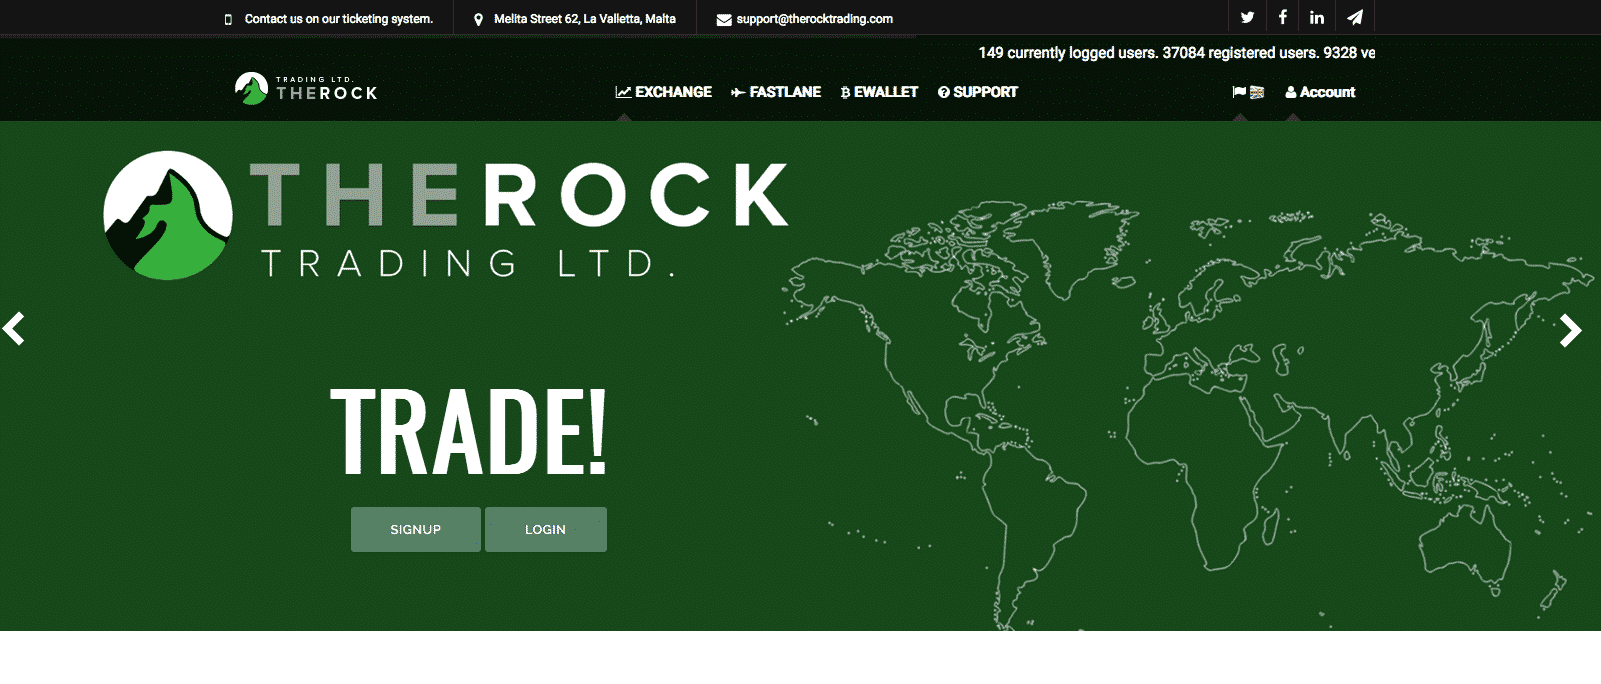 The Rock Trading: Recensione, come funziona, App e opinioni - TheRockTrading